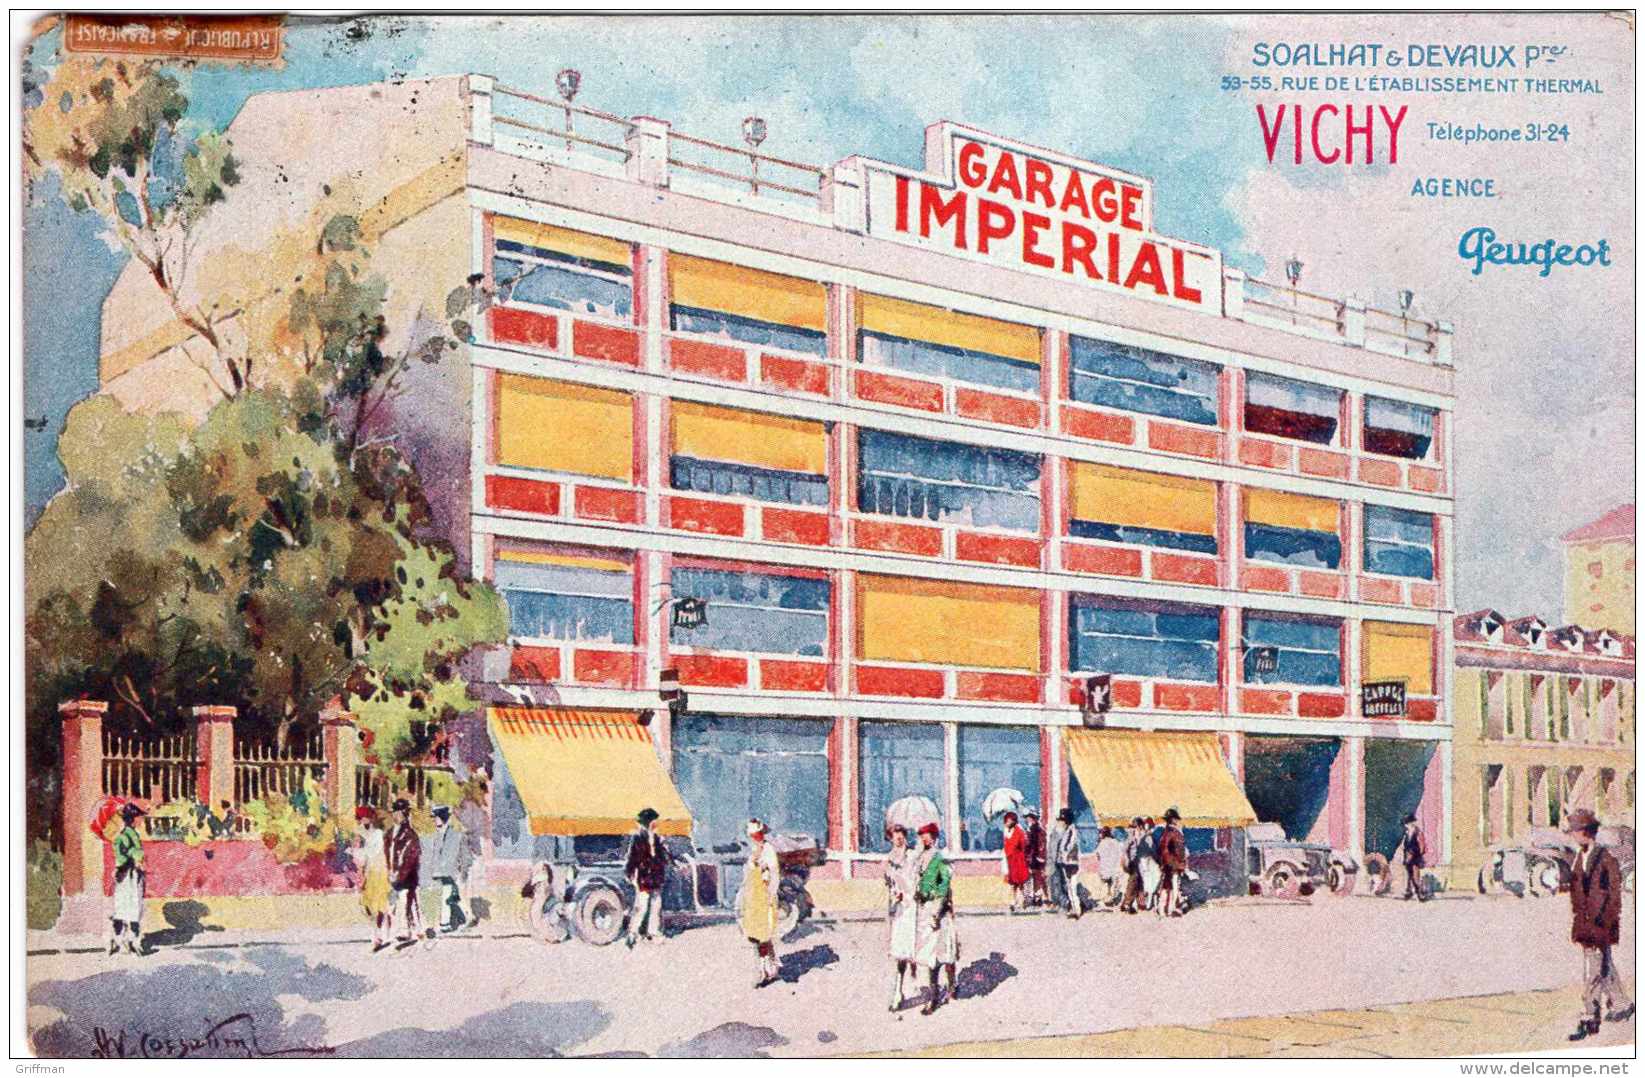 VICHY GARAGE IMPERIAL AGENCE PEUGEOT SOALHAT &amp; DEVAUX PROPRIETAIRES 53-55 RUE DE L'ETABLISSEMENT THERMAL 1928 - Vichy